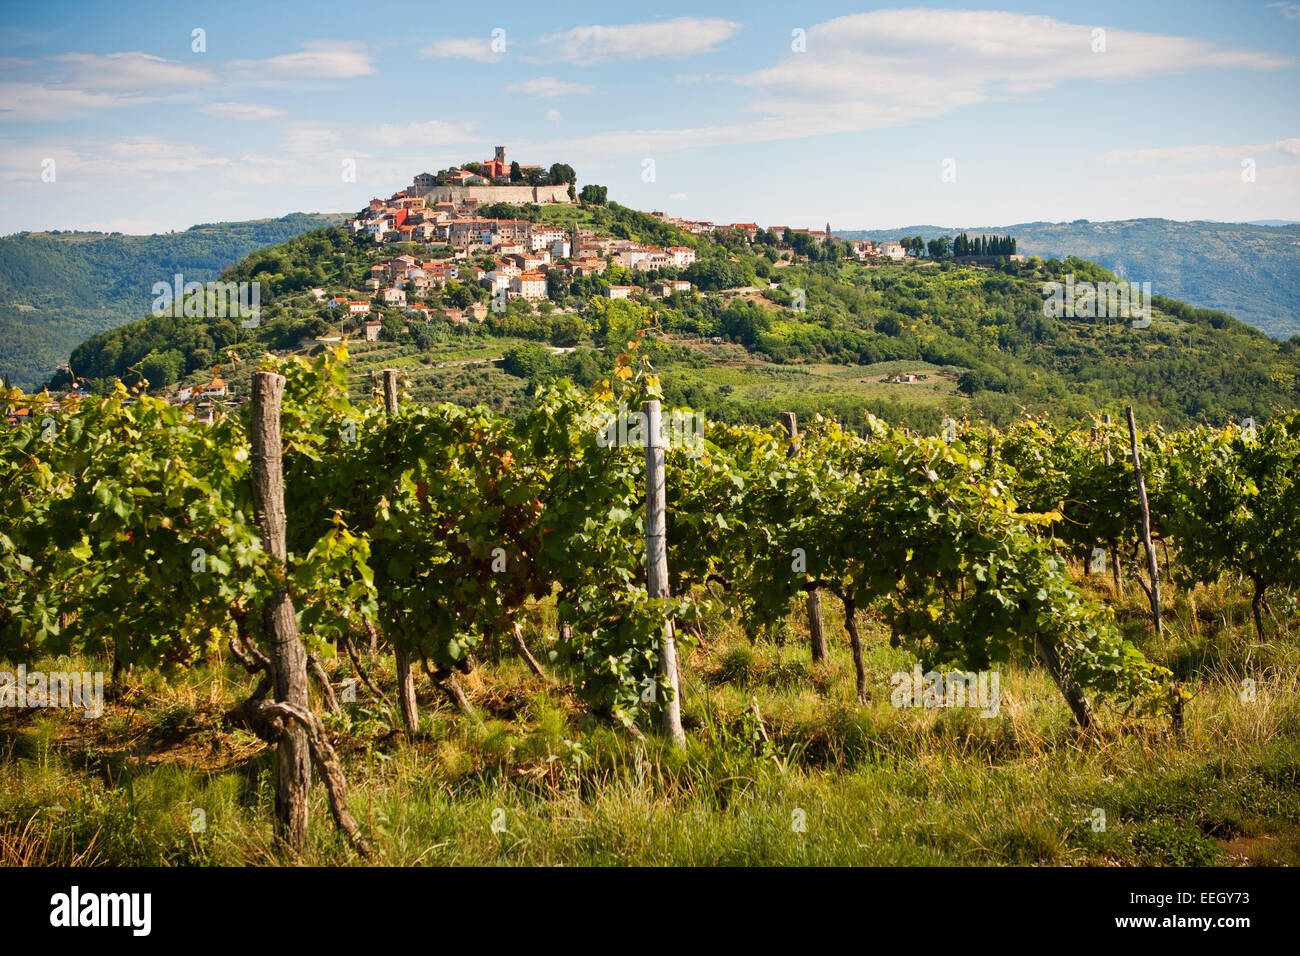 Die Stadt Motovun mit Weinberg-Istrien - Kroatien Stockfoto